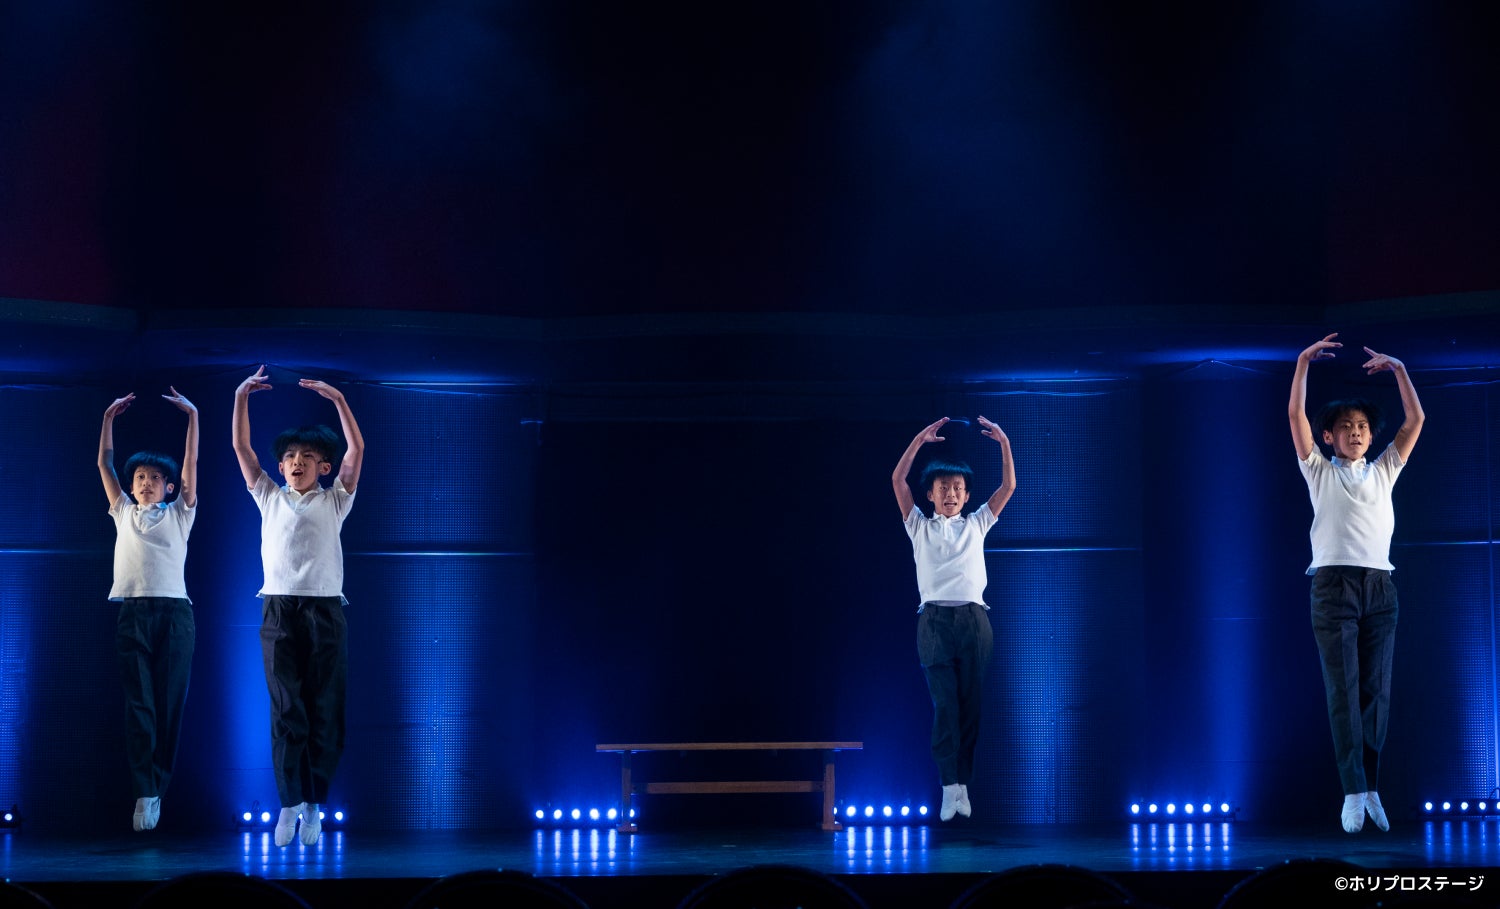 【写真・コメント】ミュージカル『ビリー・エリオット〜リトル・ダンサー〜』製作発表レポート